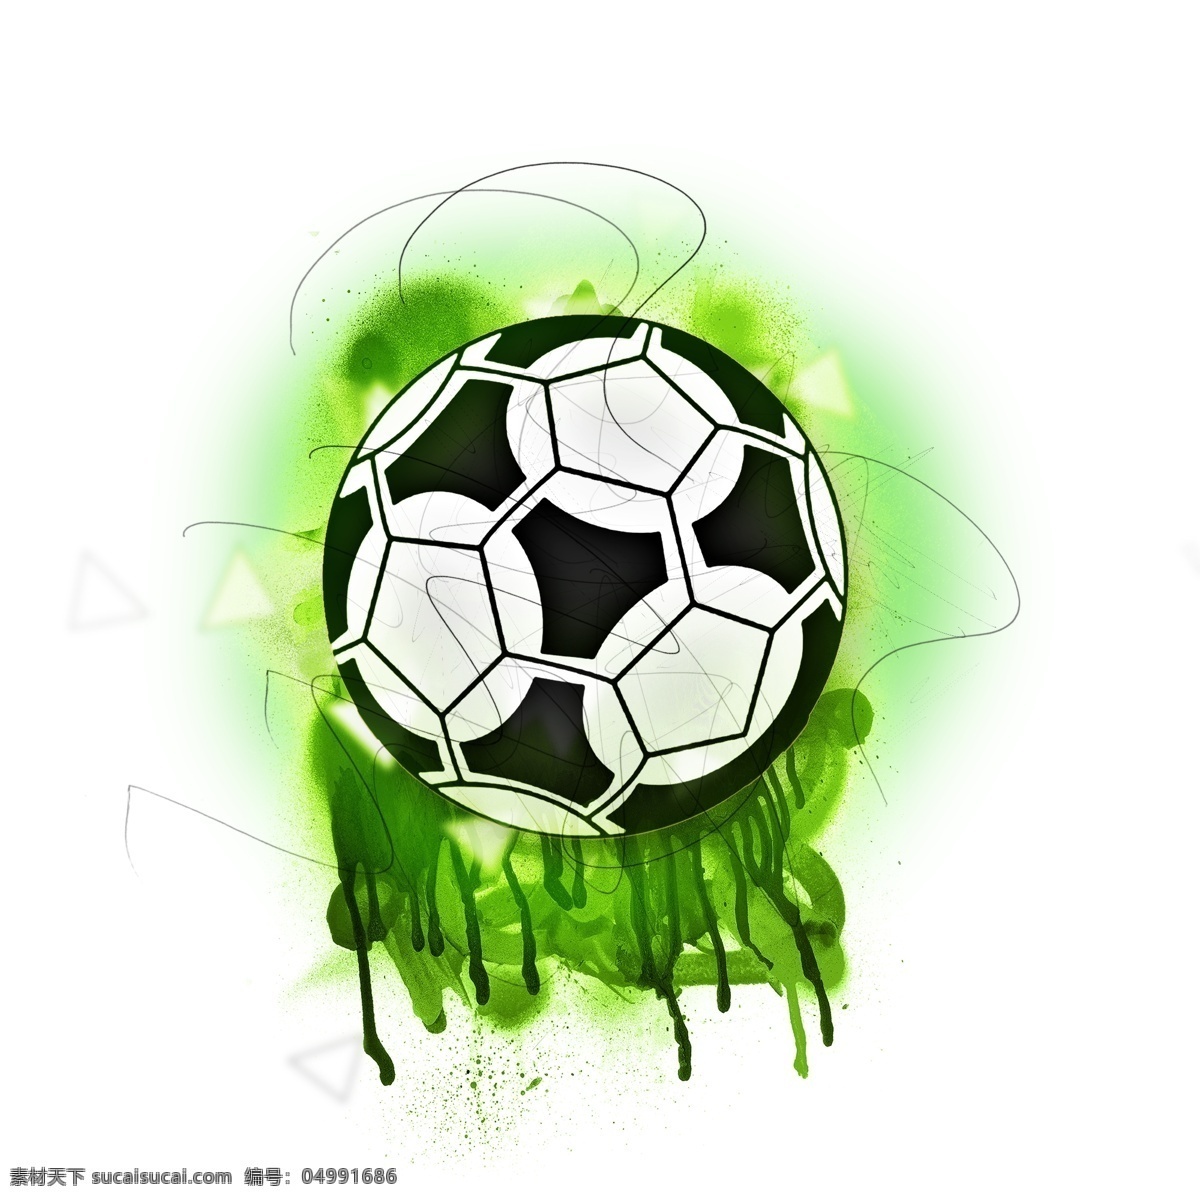 绿色 炫 酷 时尚 世界杯 足球 墨迹 炫彩足球 渐变 体育运动 体育比赛 足球比赛 炫彩的世界杯 炫酷世界杯